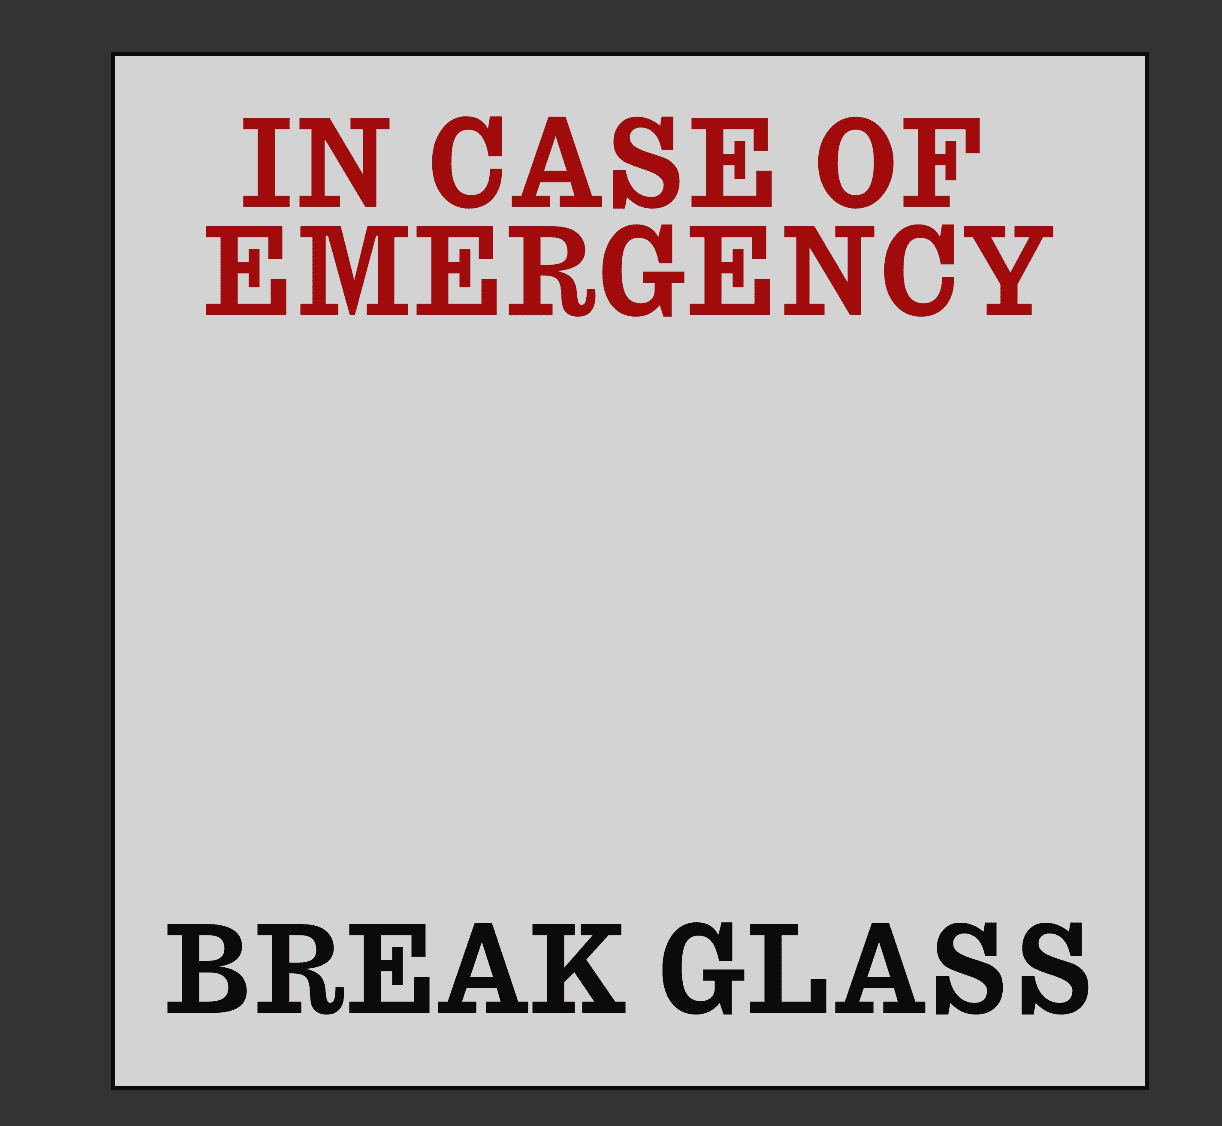 Break Glass